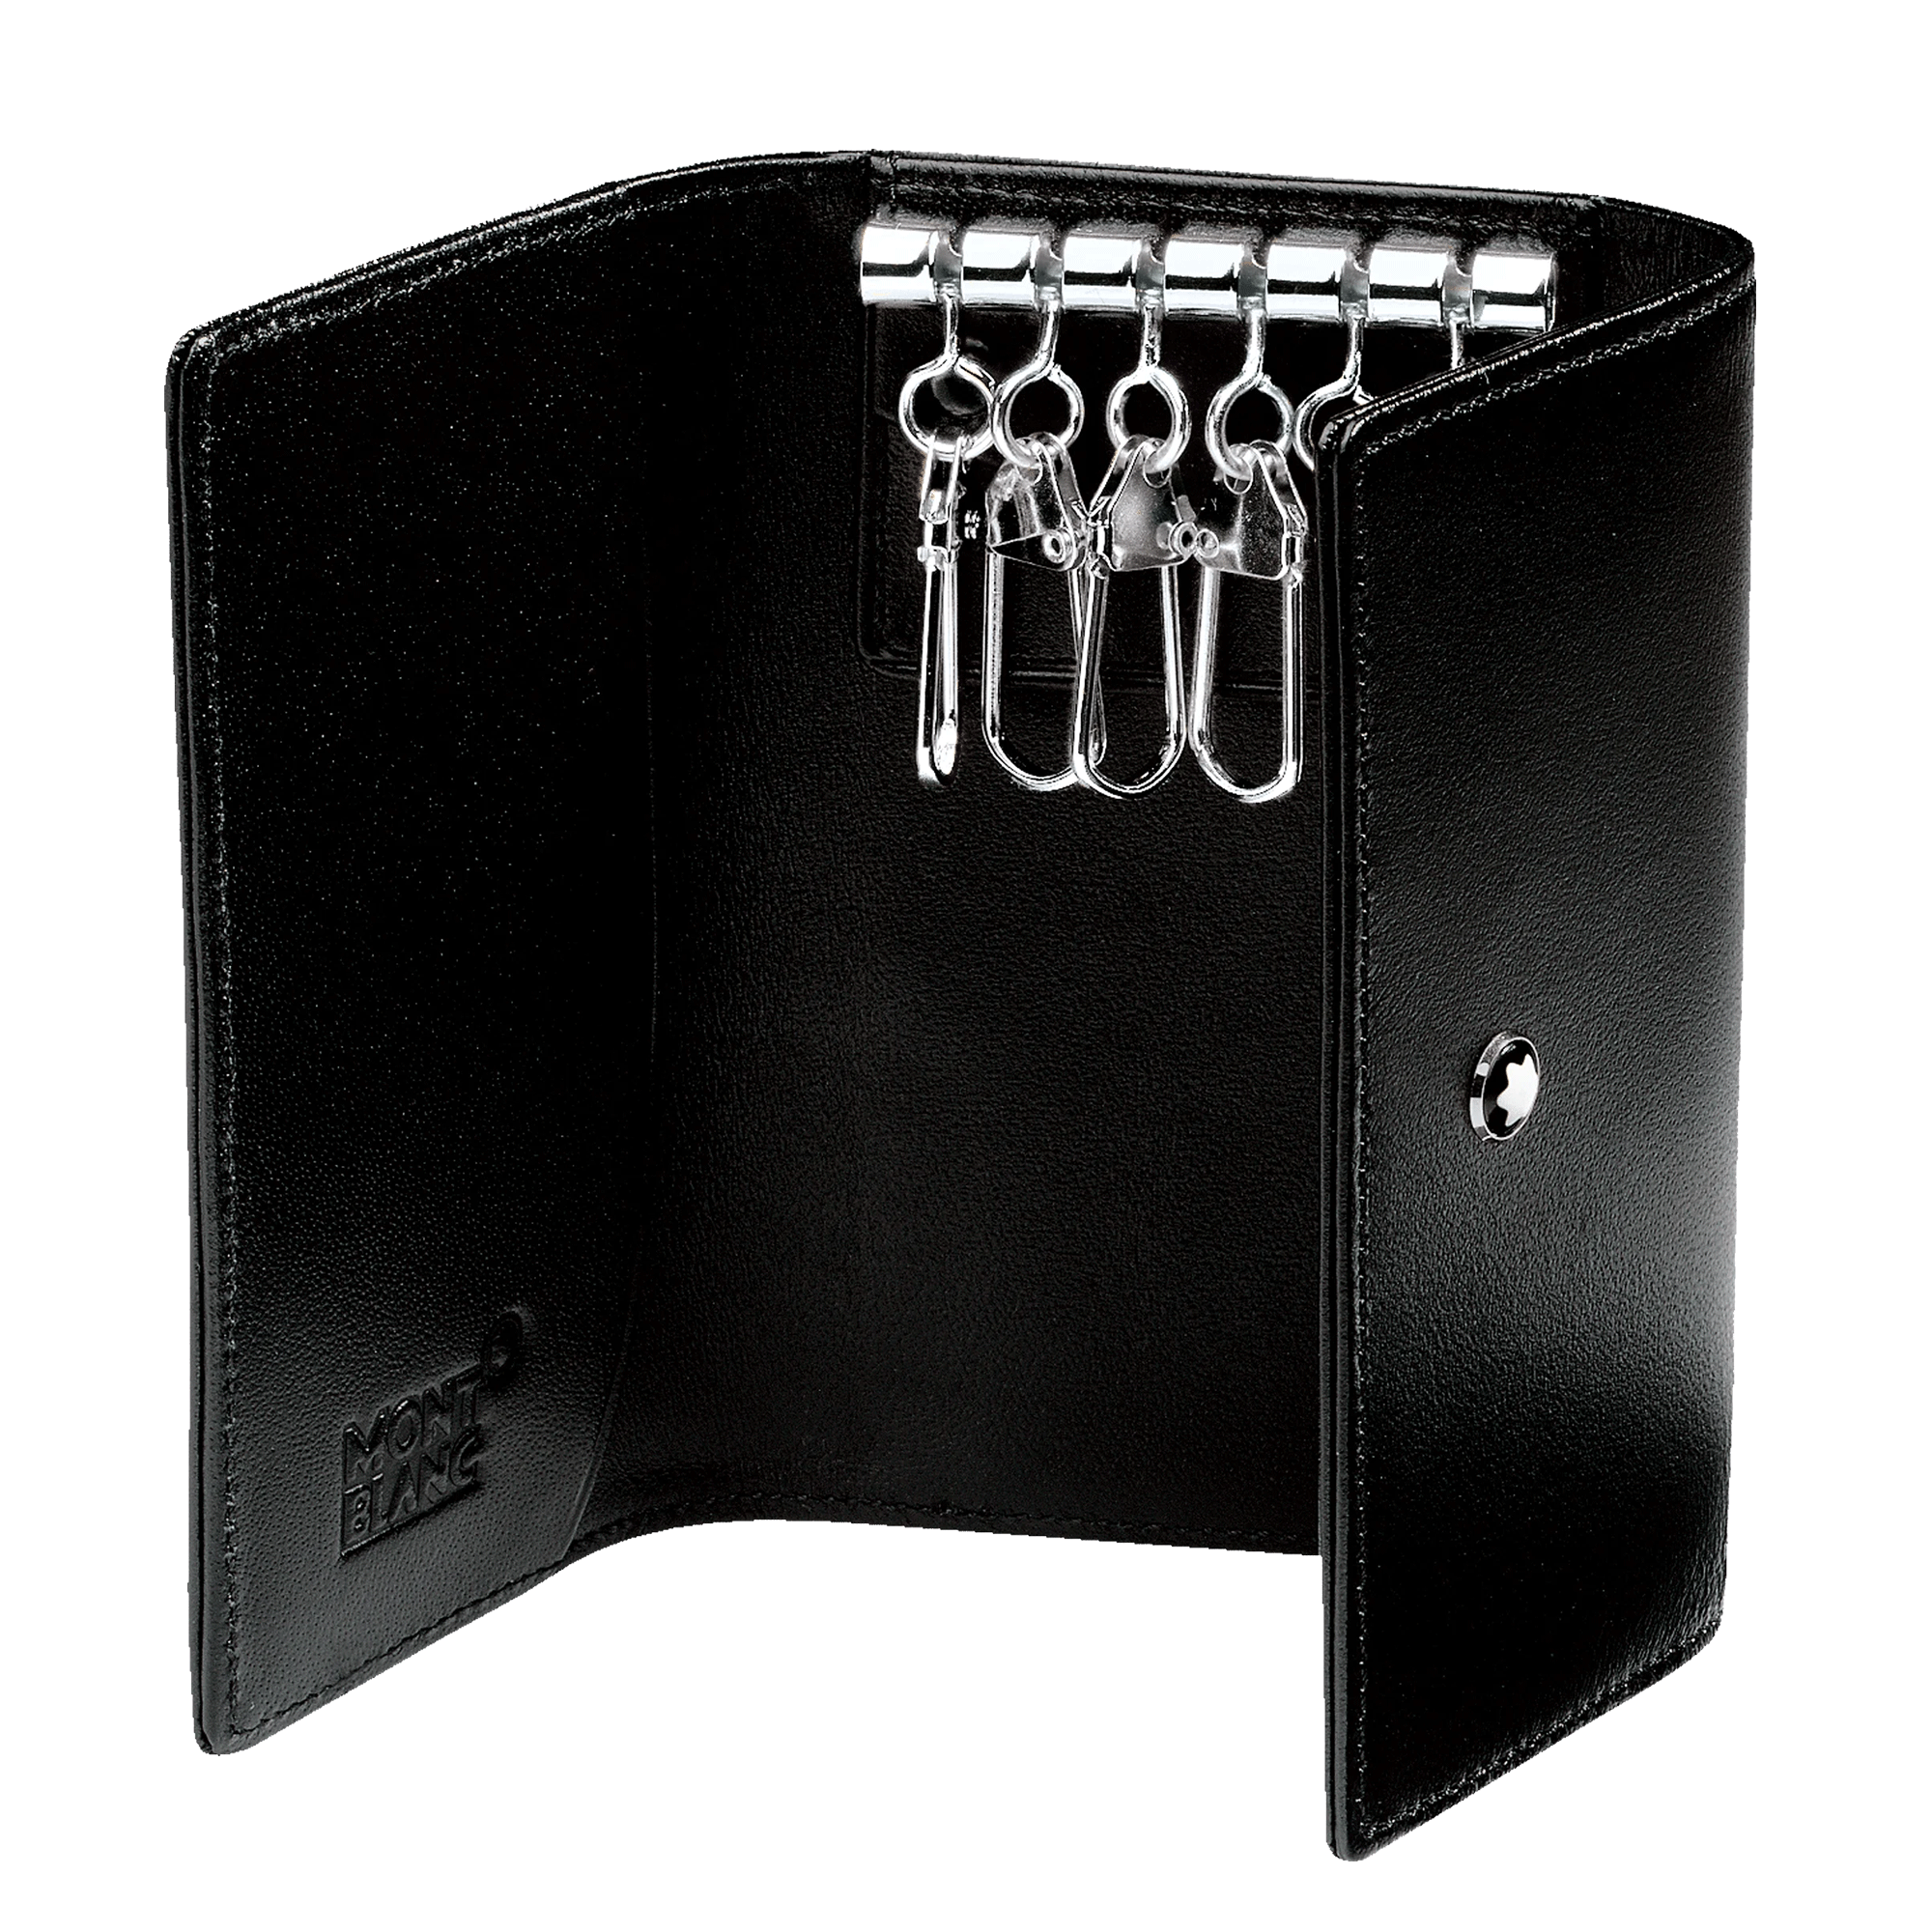 Meisterstuck Key Case 6 Keys in Black Leather